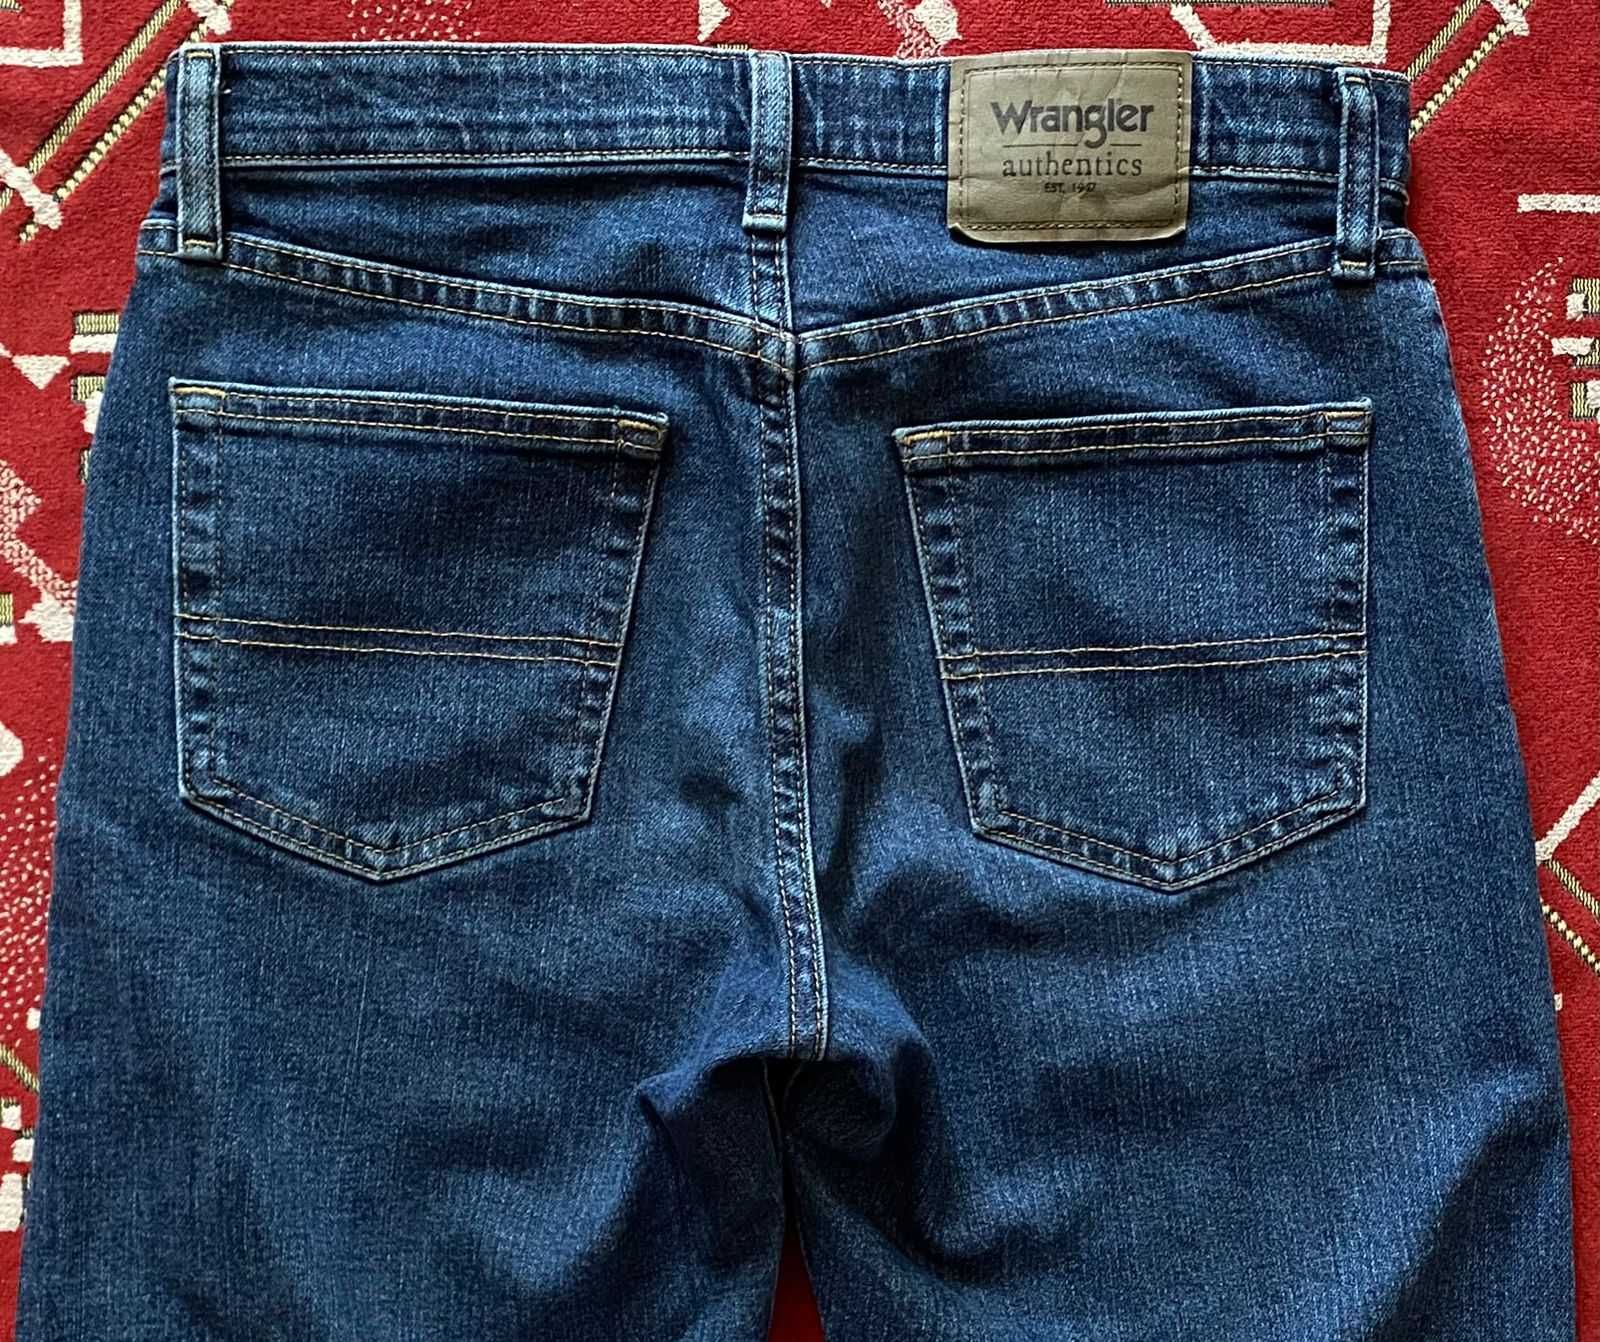 Фирмен. джинсы "Wrangler" Authentics  original W29xL30 на 44 разм.